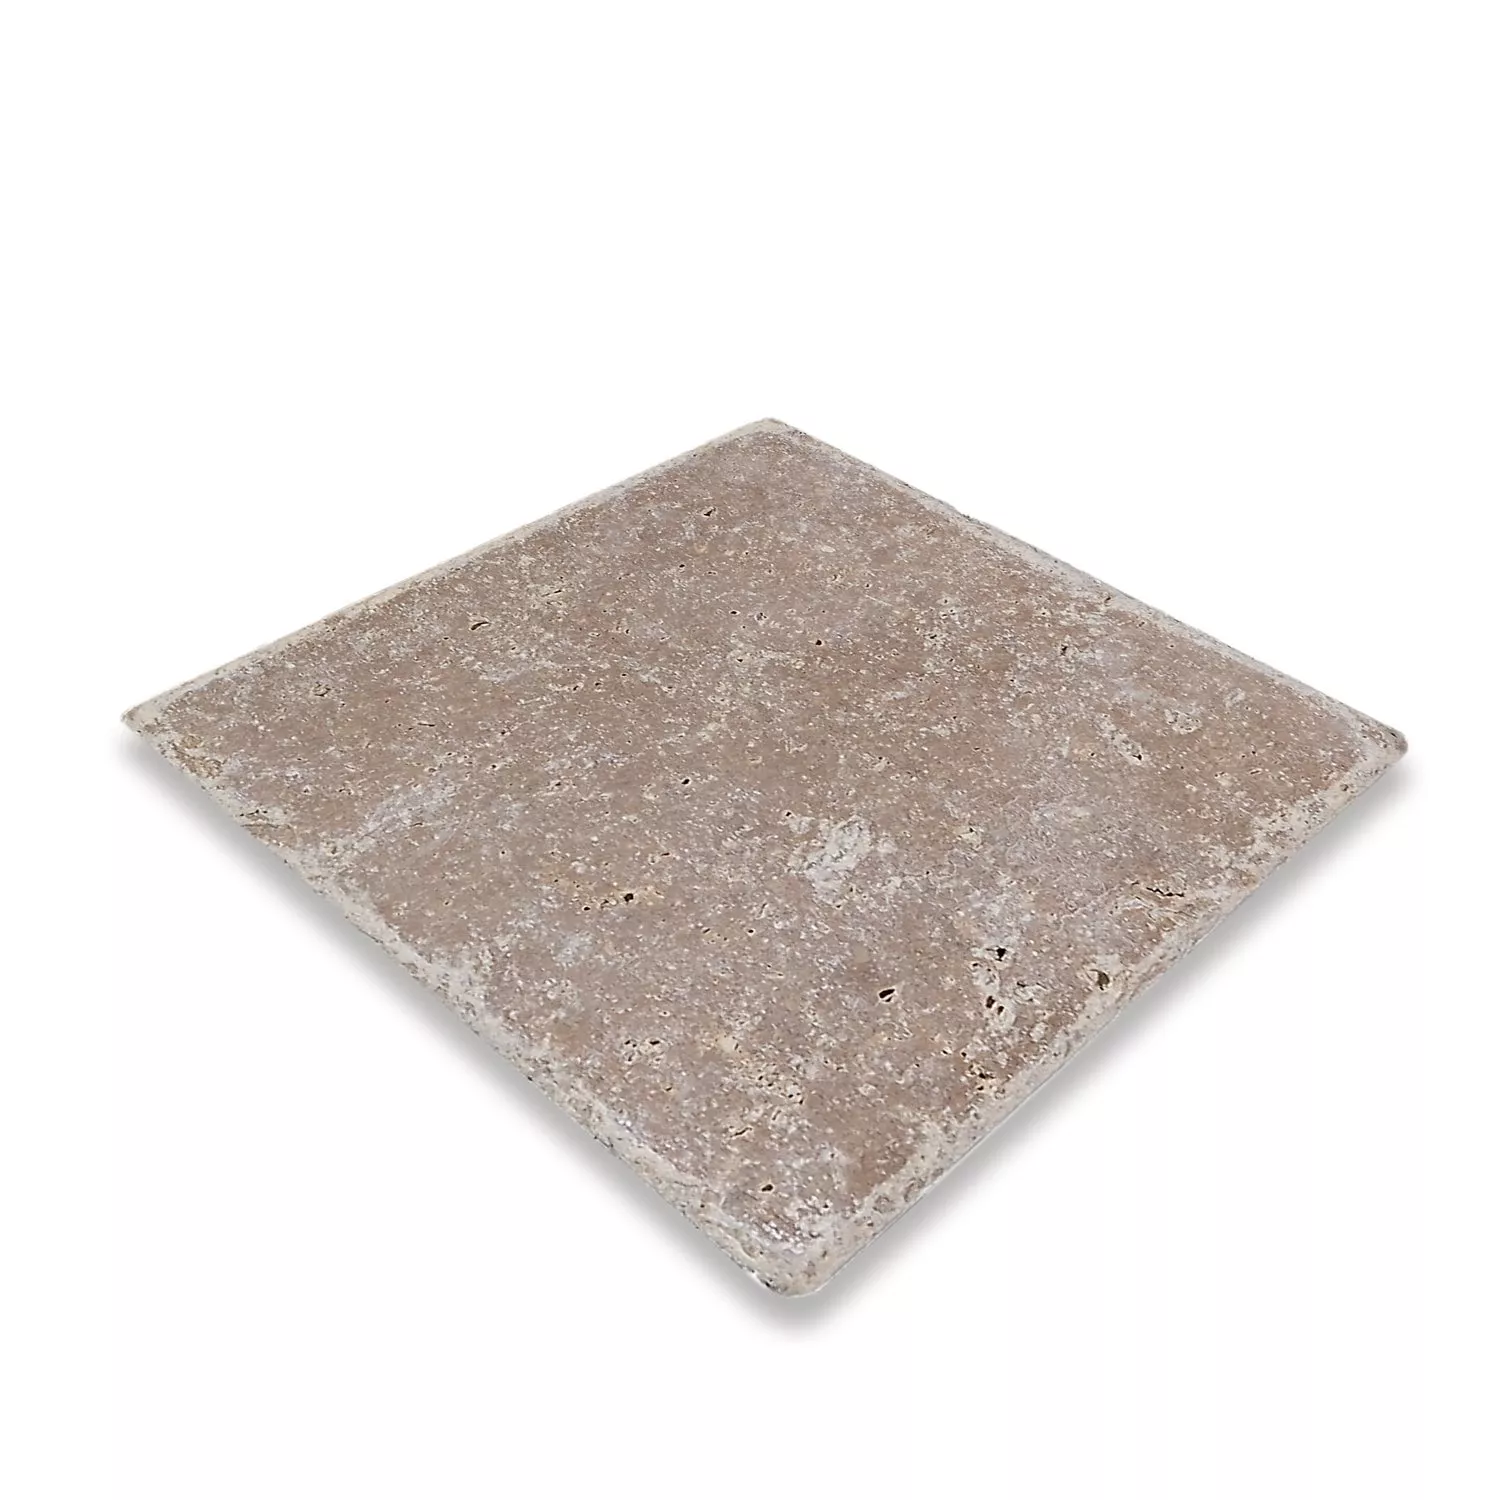 Πλακάκια Aπό Φυσική Πέτρα Είδος Ασβεστόλιθου Patara Noce 30,5x30,5cm